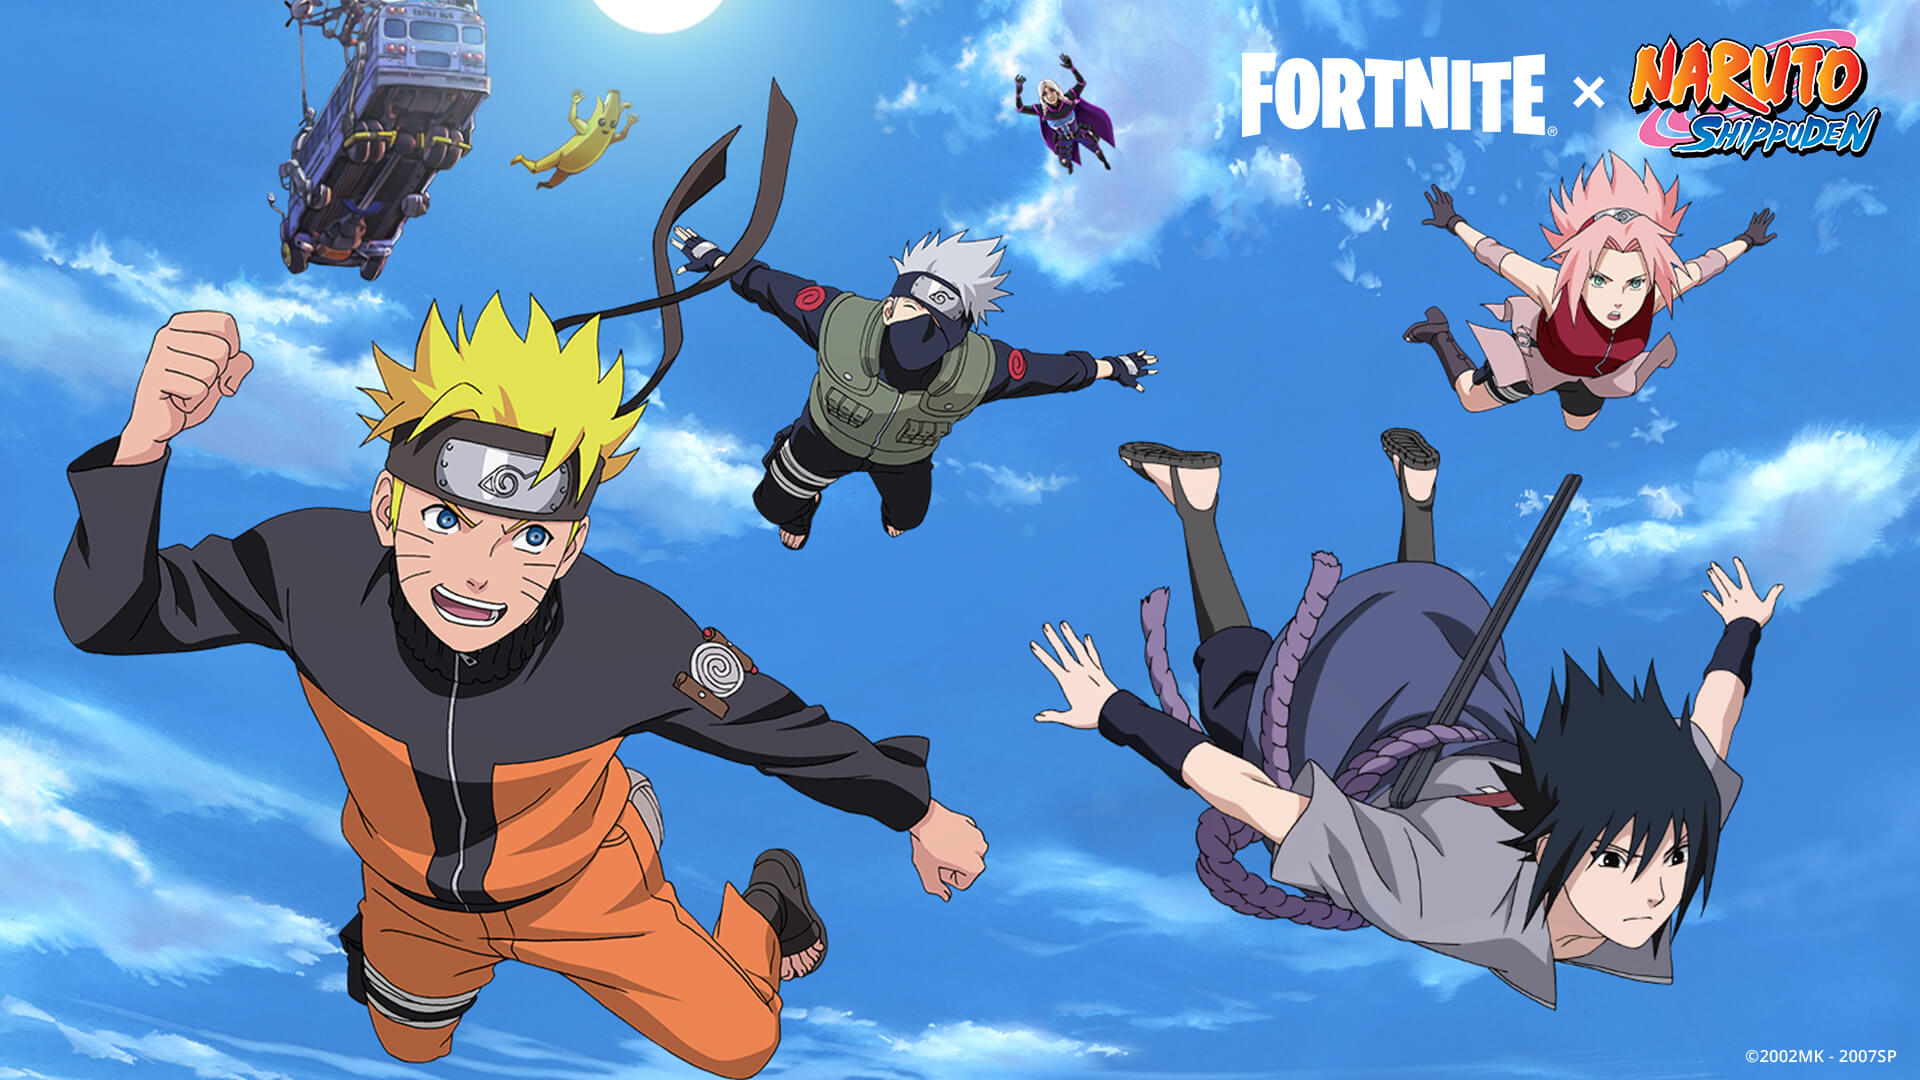 Altri personaggi di Naruto, tra cui Hinata e Gaara, stanno arrivando su Fortnite!